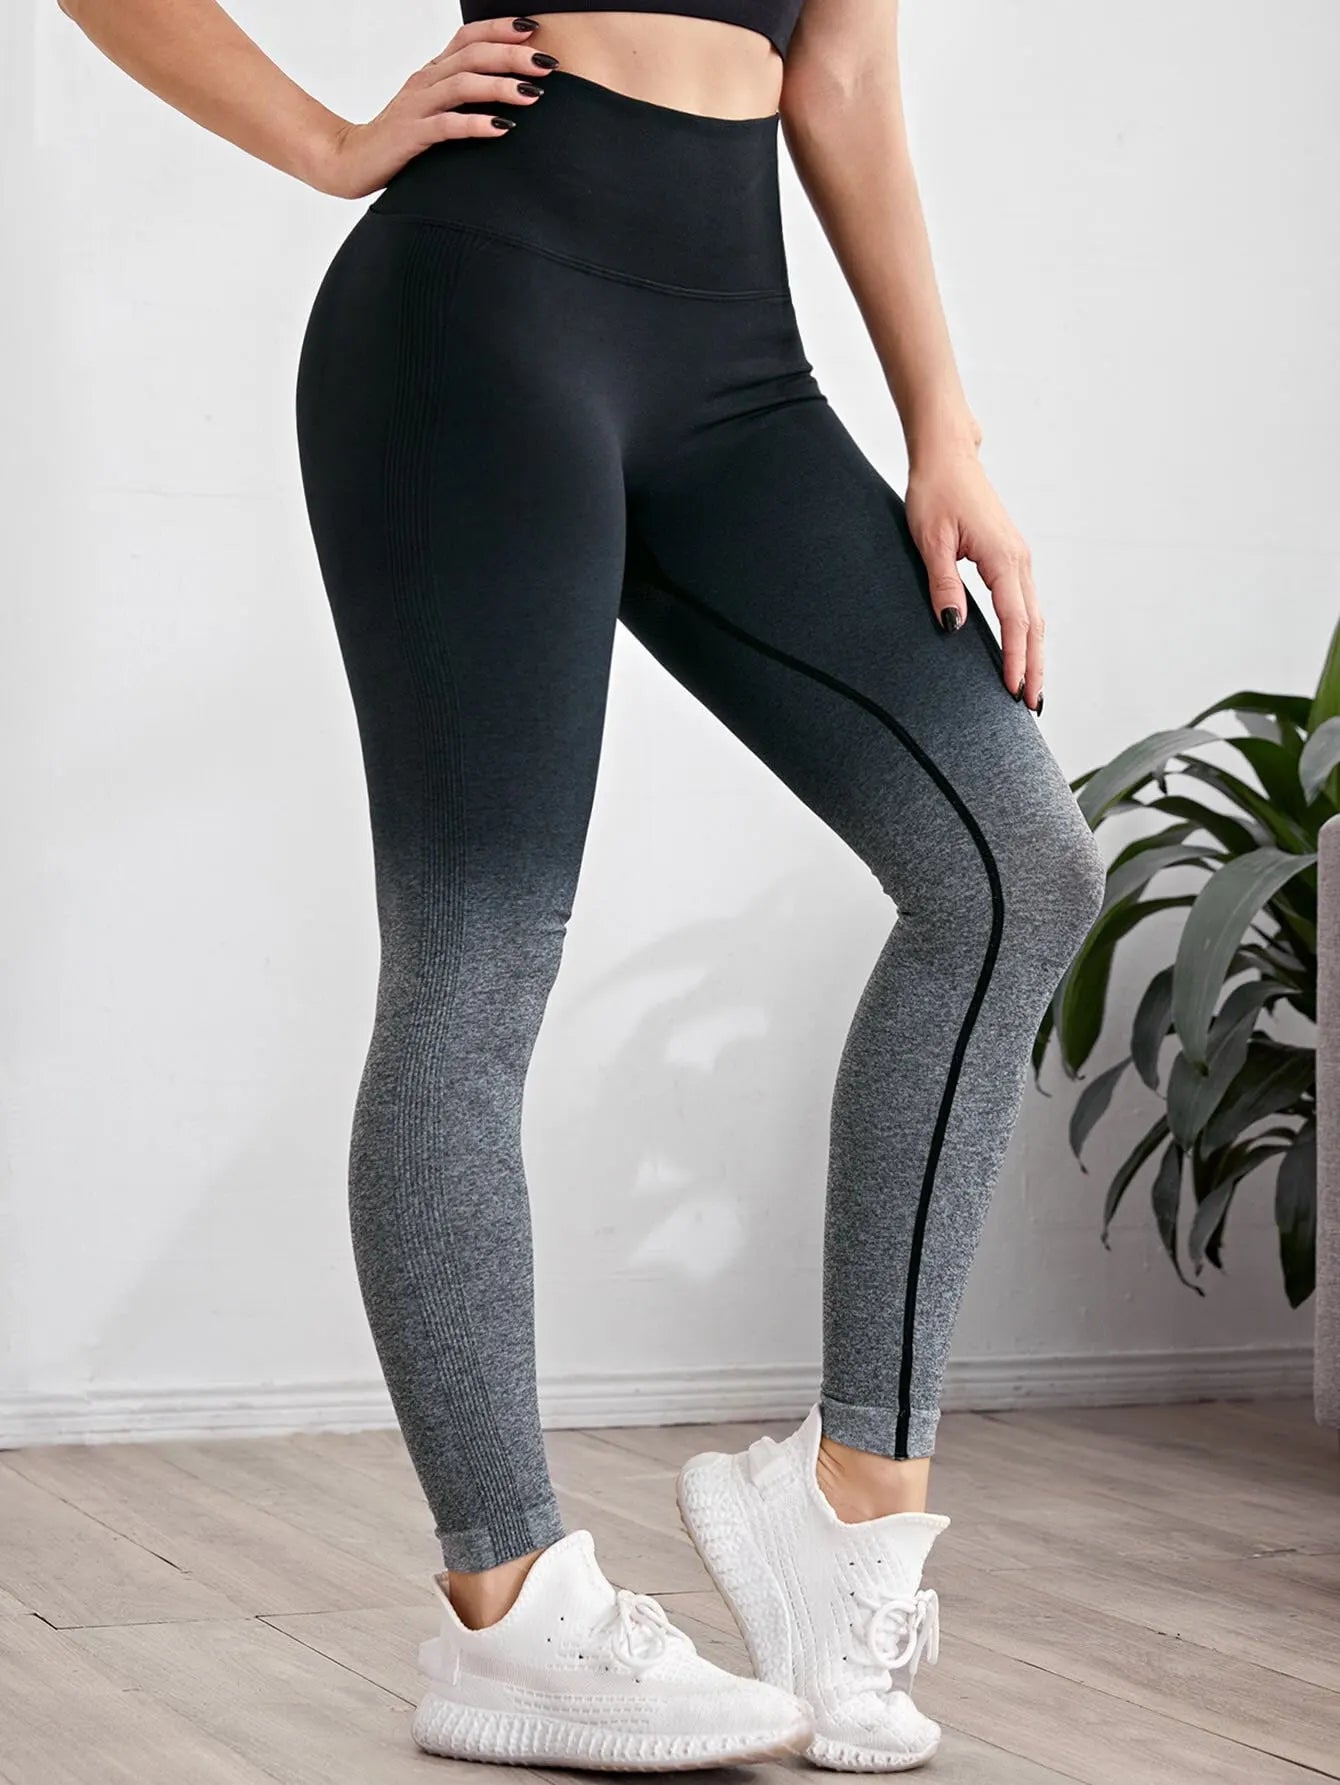 Gradient Color Energy Legging - Women's Workout Yoga Pants Yoga Shop 2018